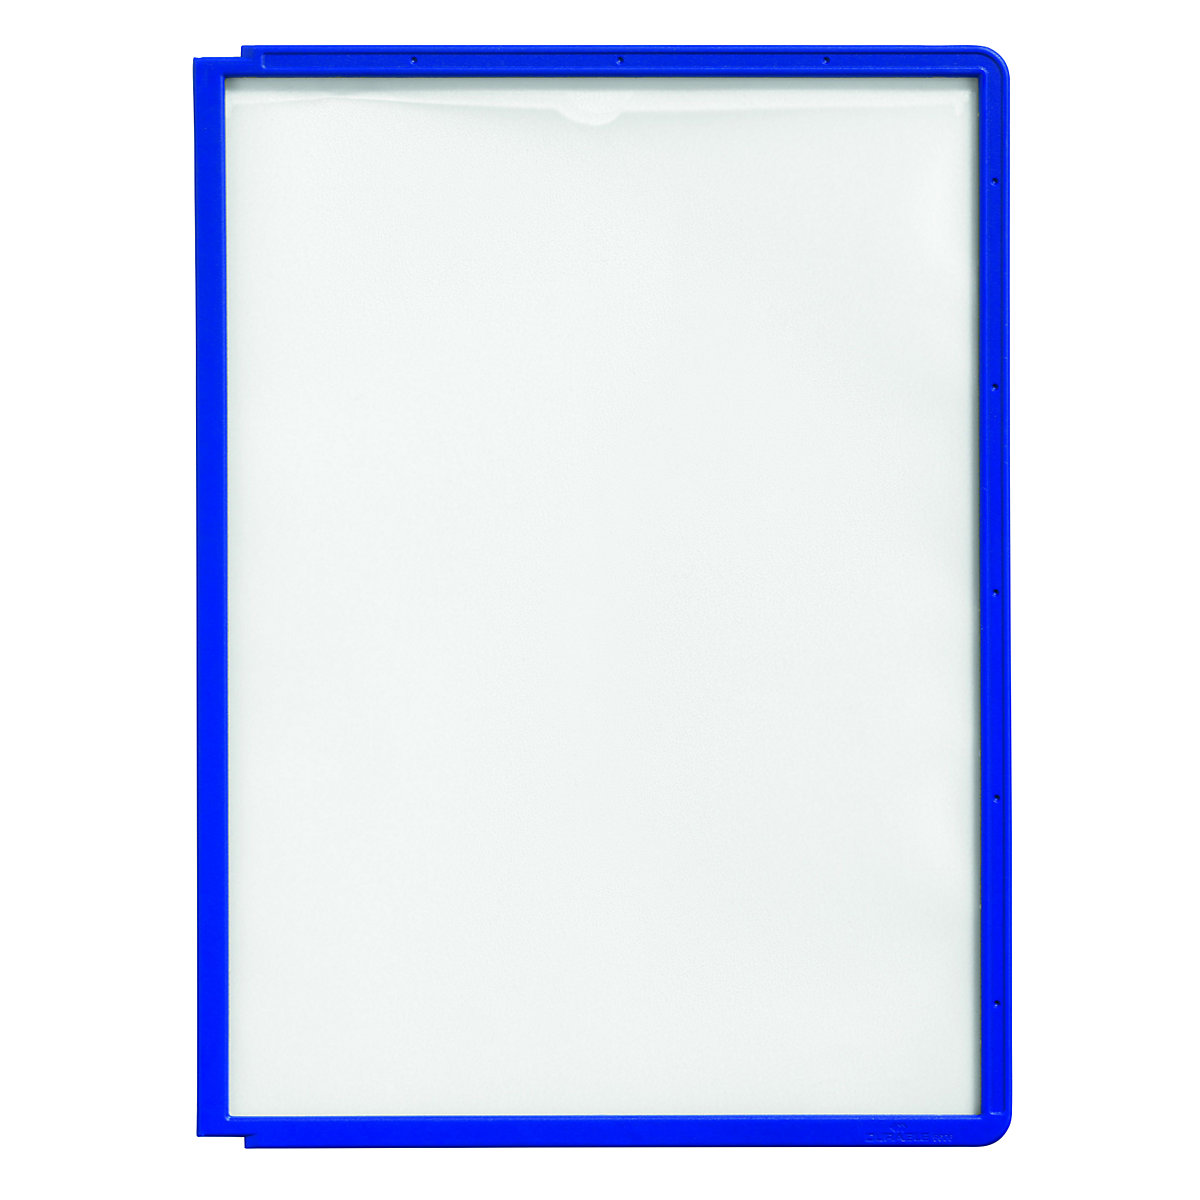 Pochette transparente avec cadre plastique – DURABLE, pour format A4, lot de 10, bleu